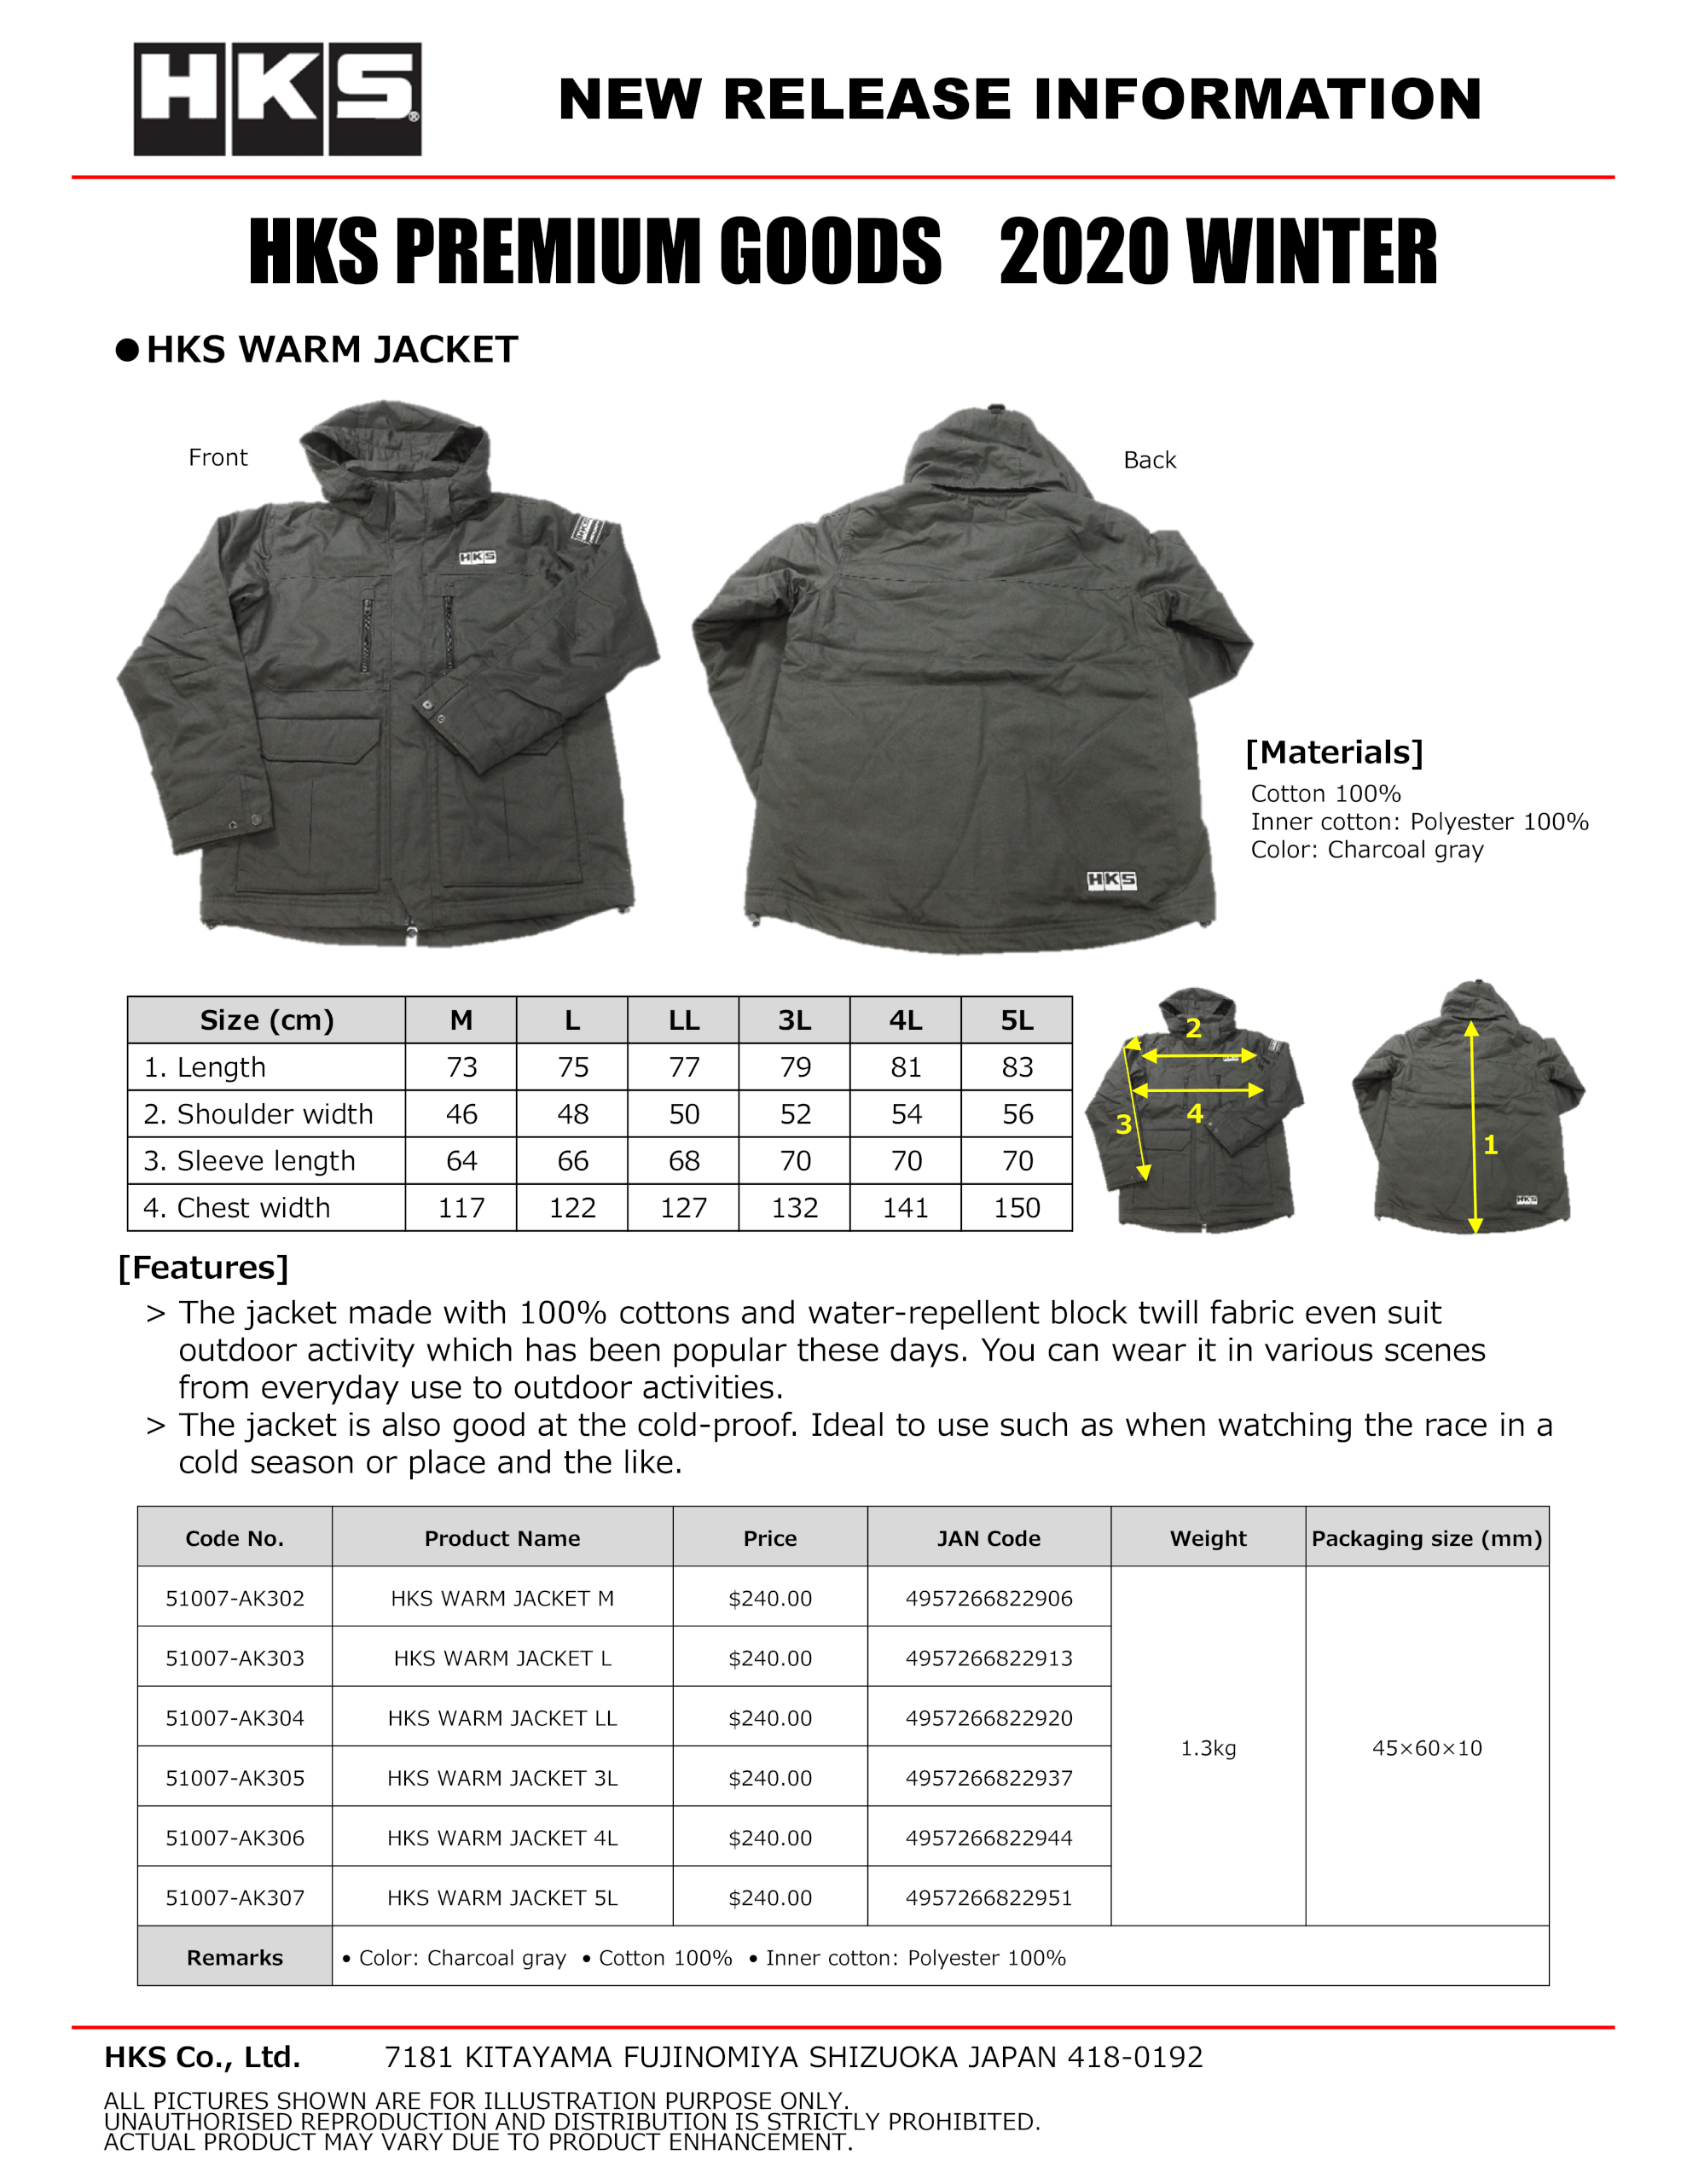 51007-AK302 to307 HKS PREMIUM GOODS 2020 WINTER_Warm Jacket.png